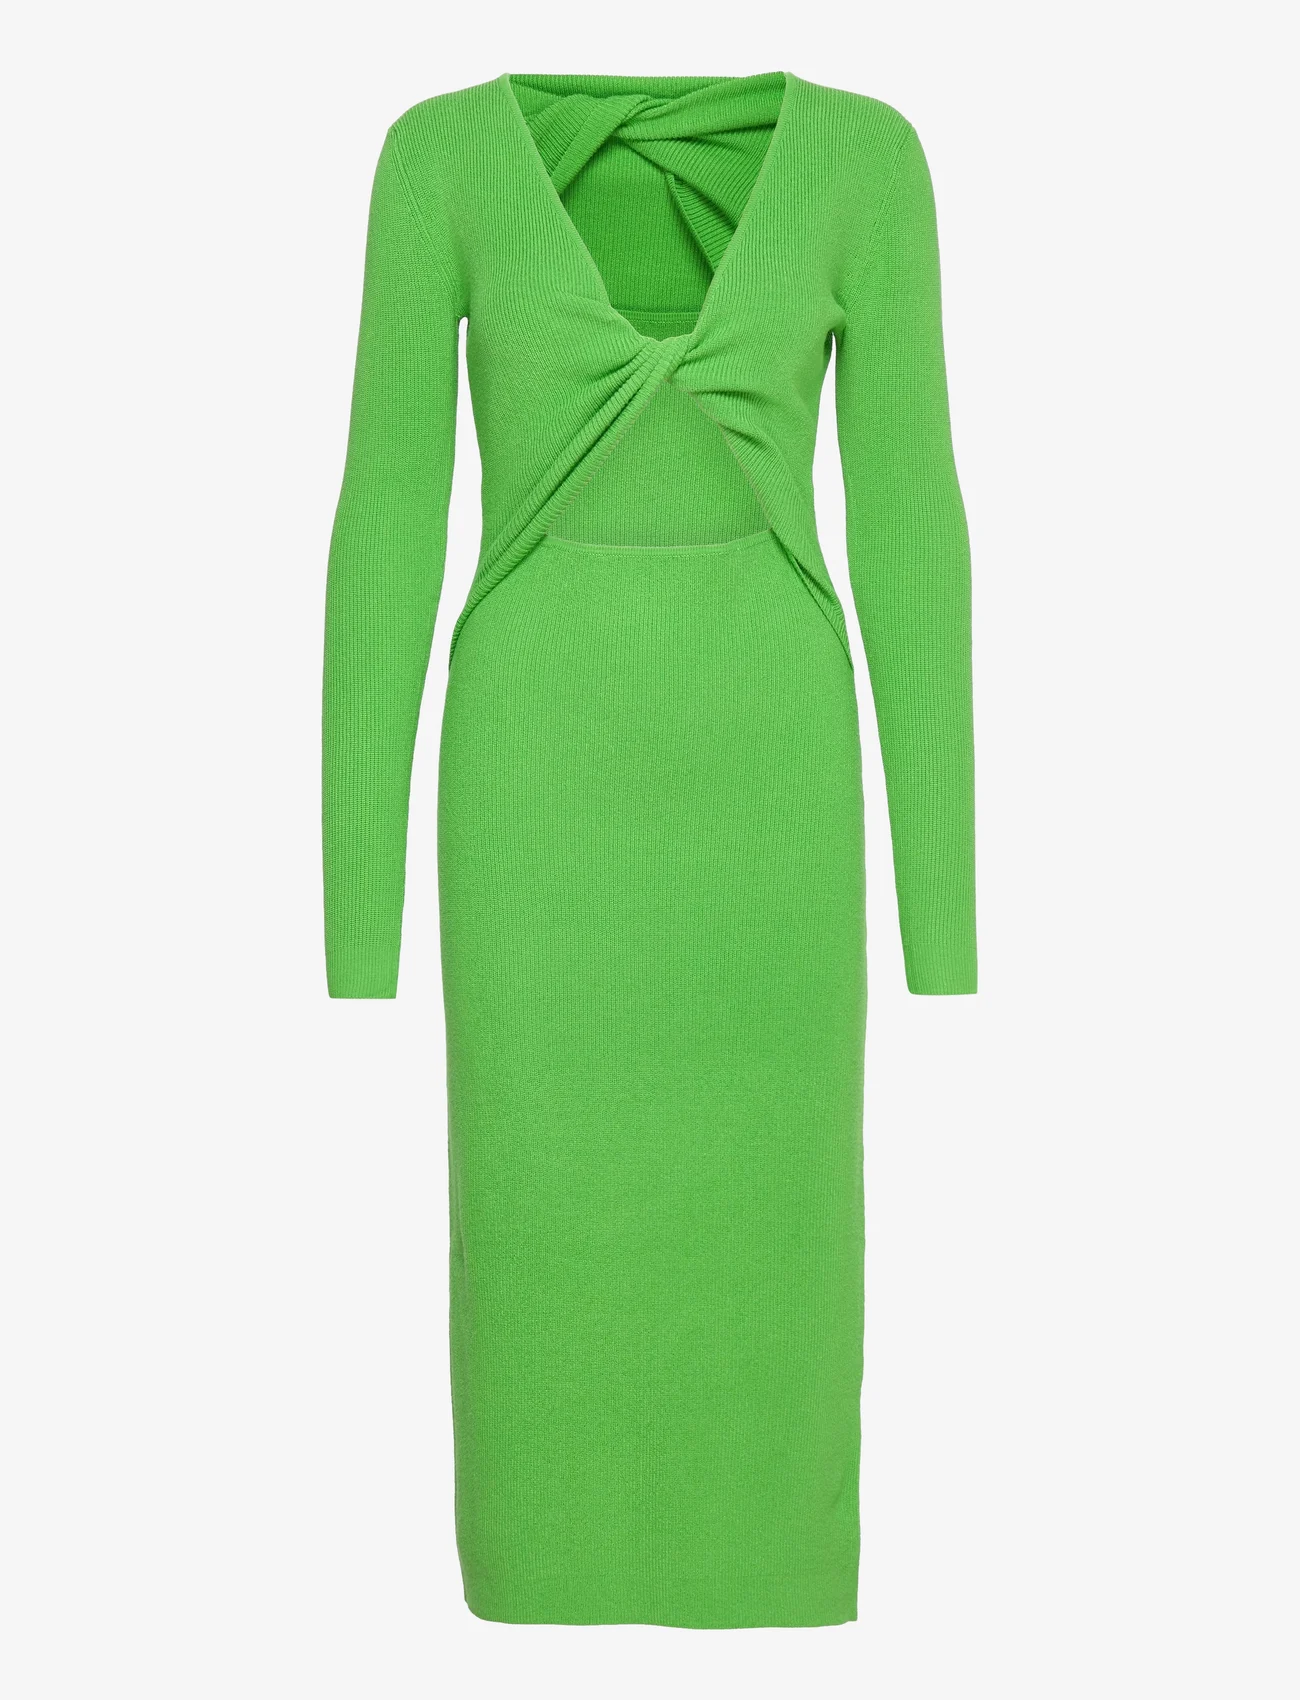 bzr - Lela Jenner dress - stramme kjoler - green flash - 0